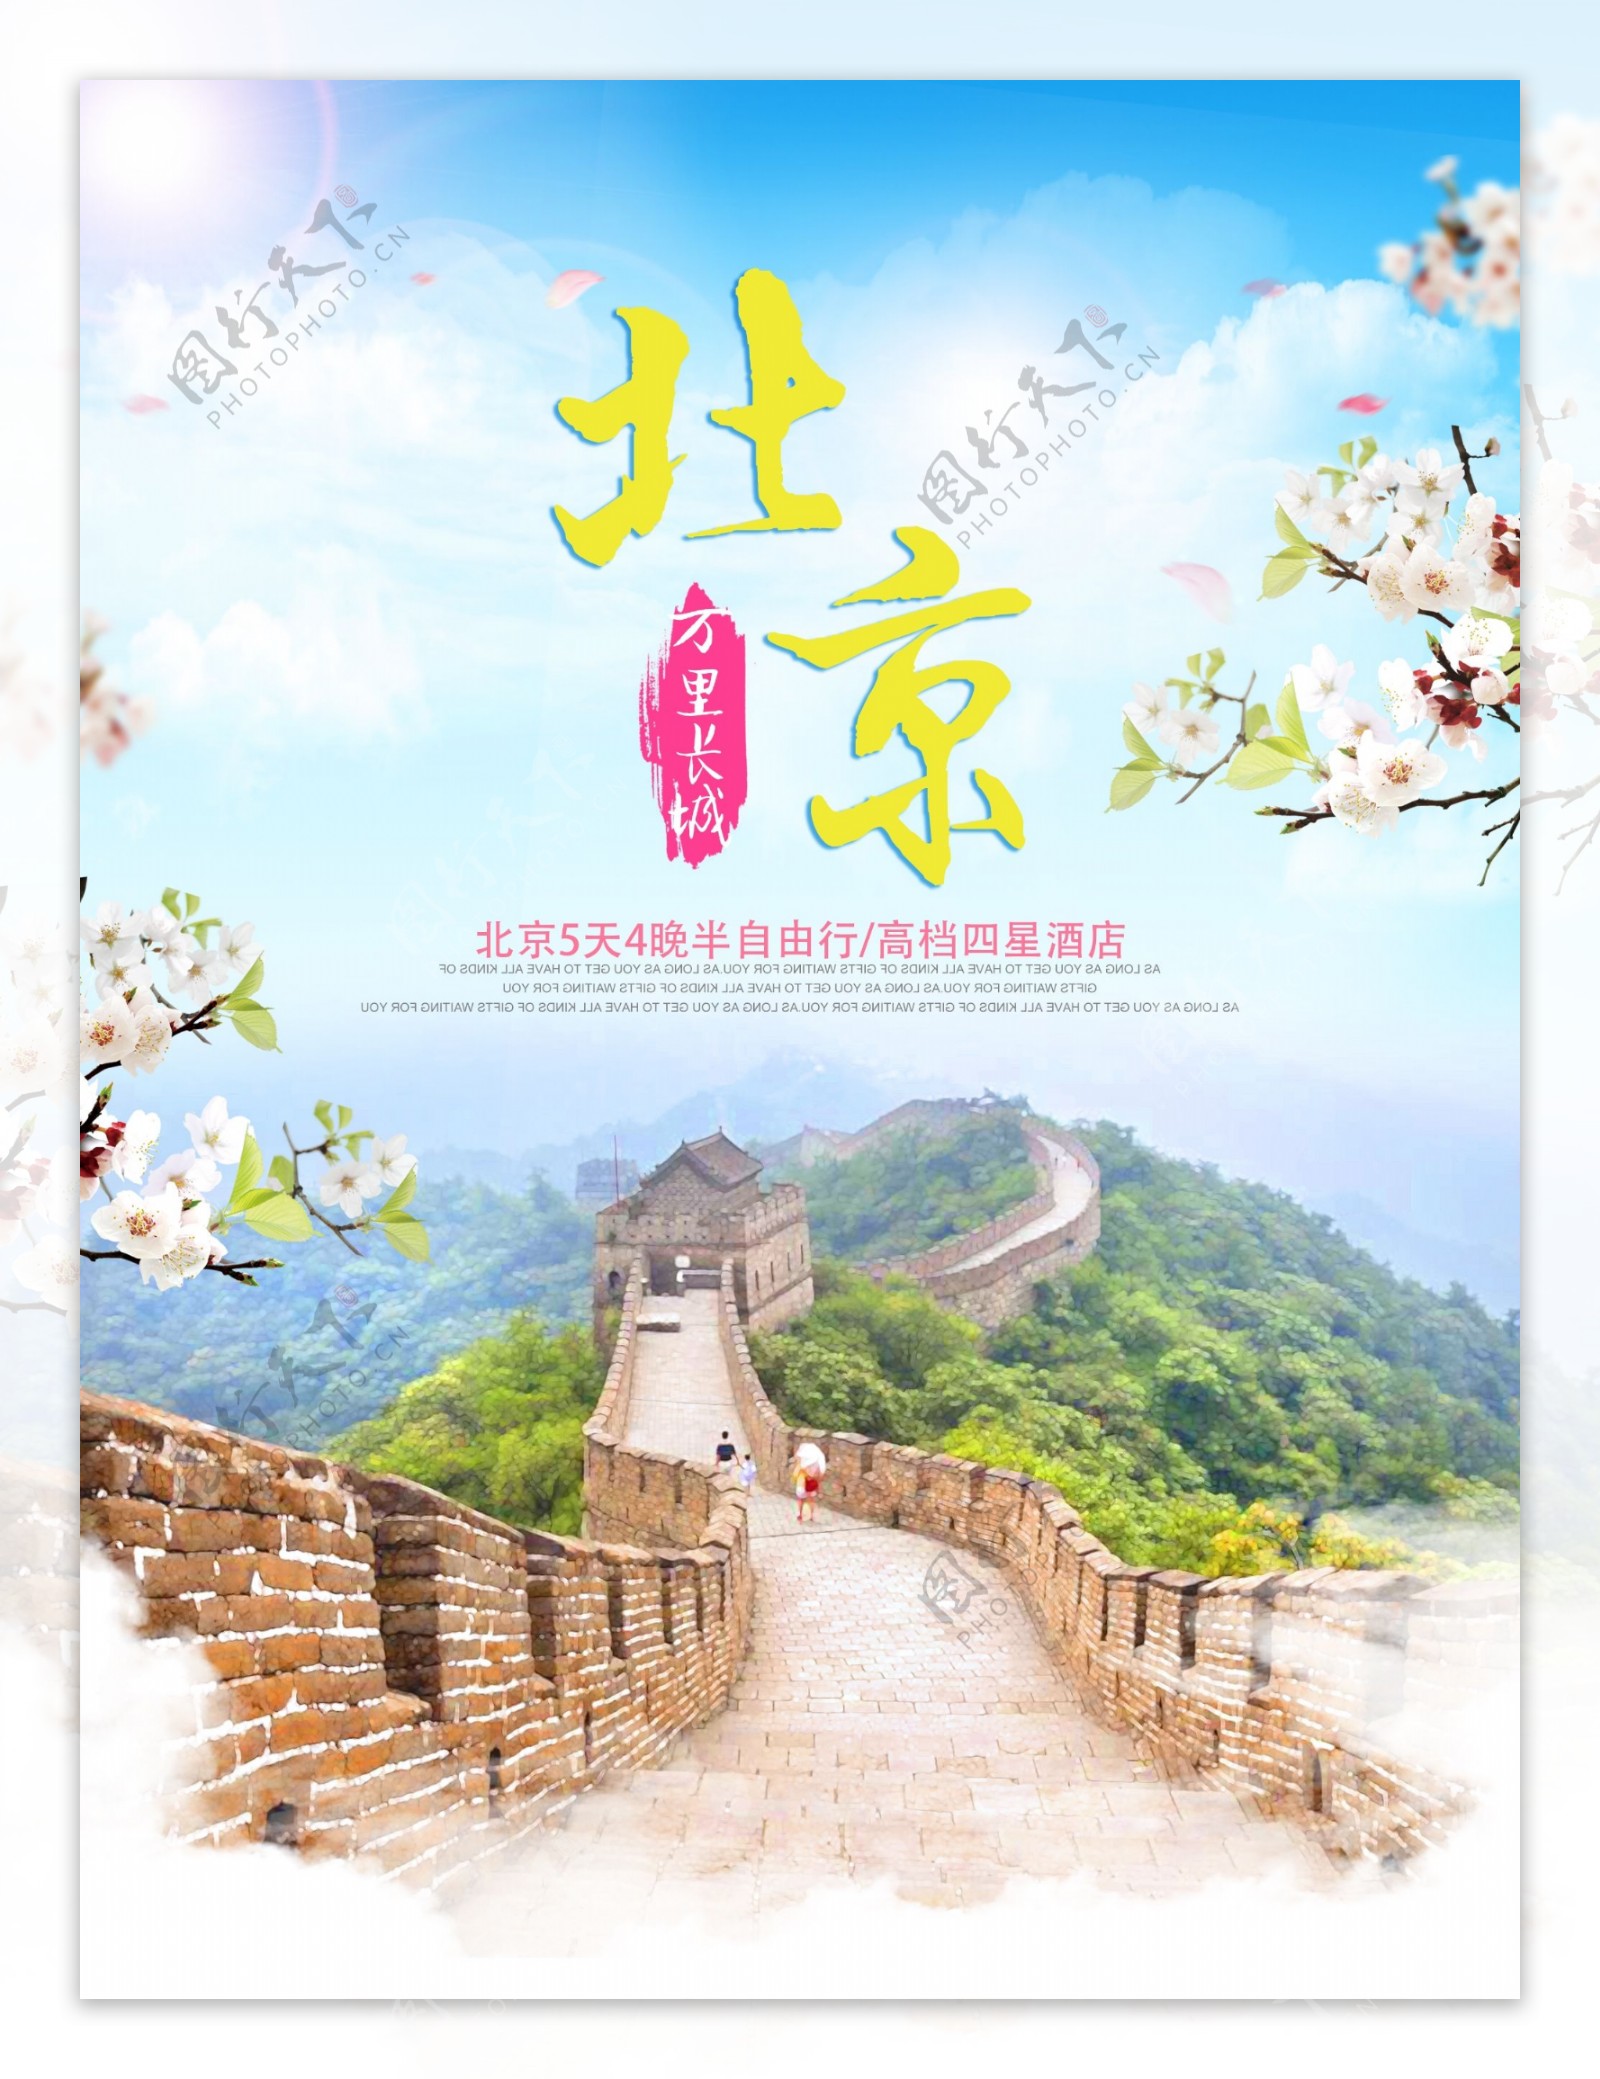 北京万里长城旅游宣传海报